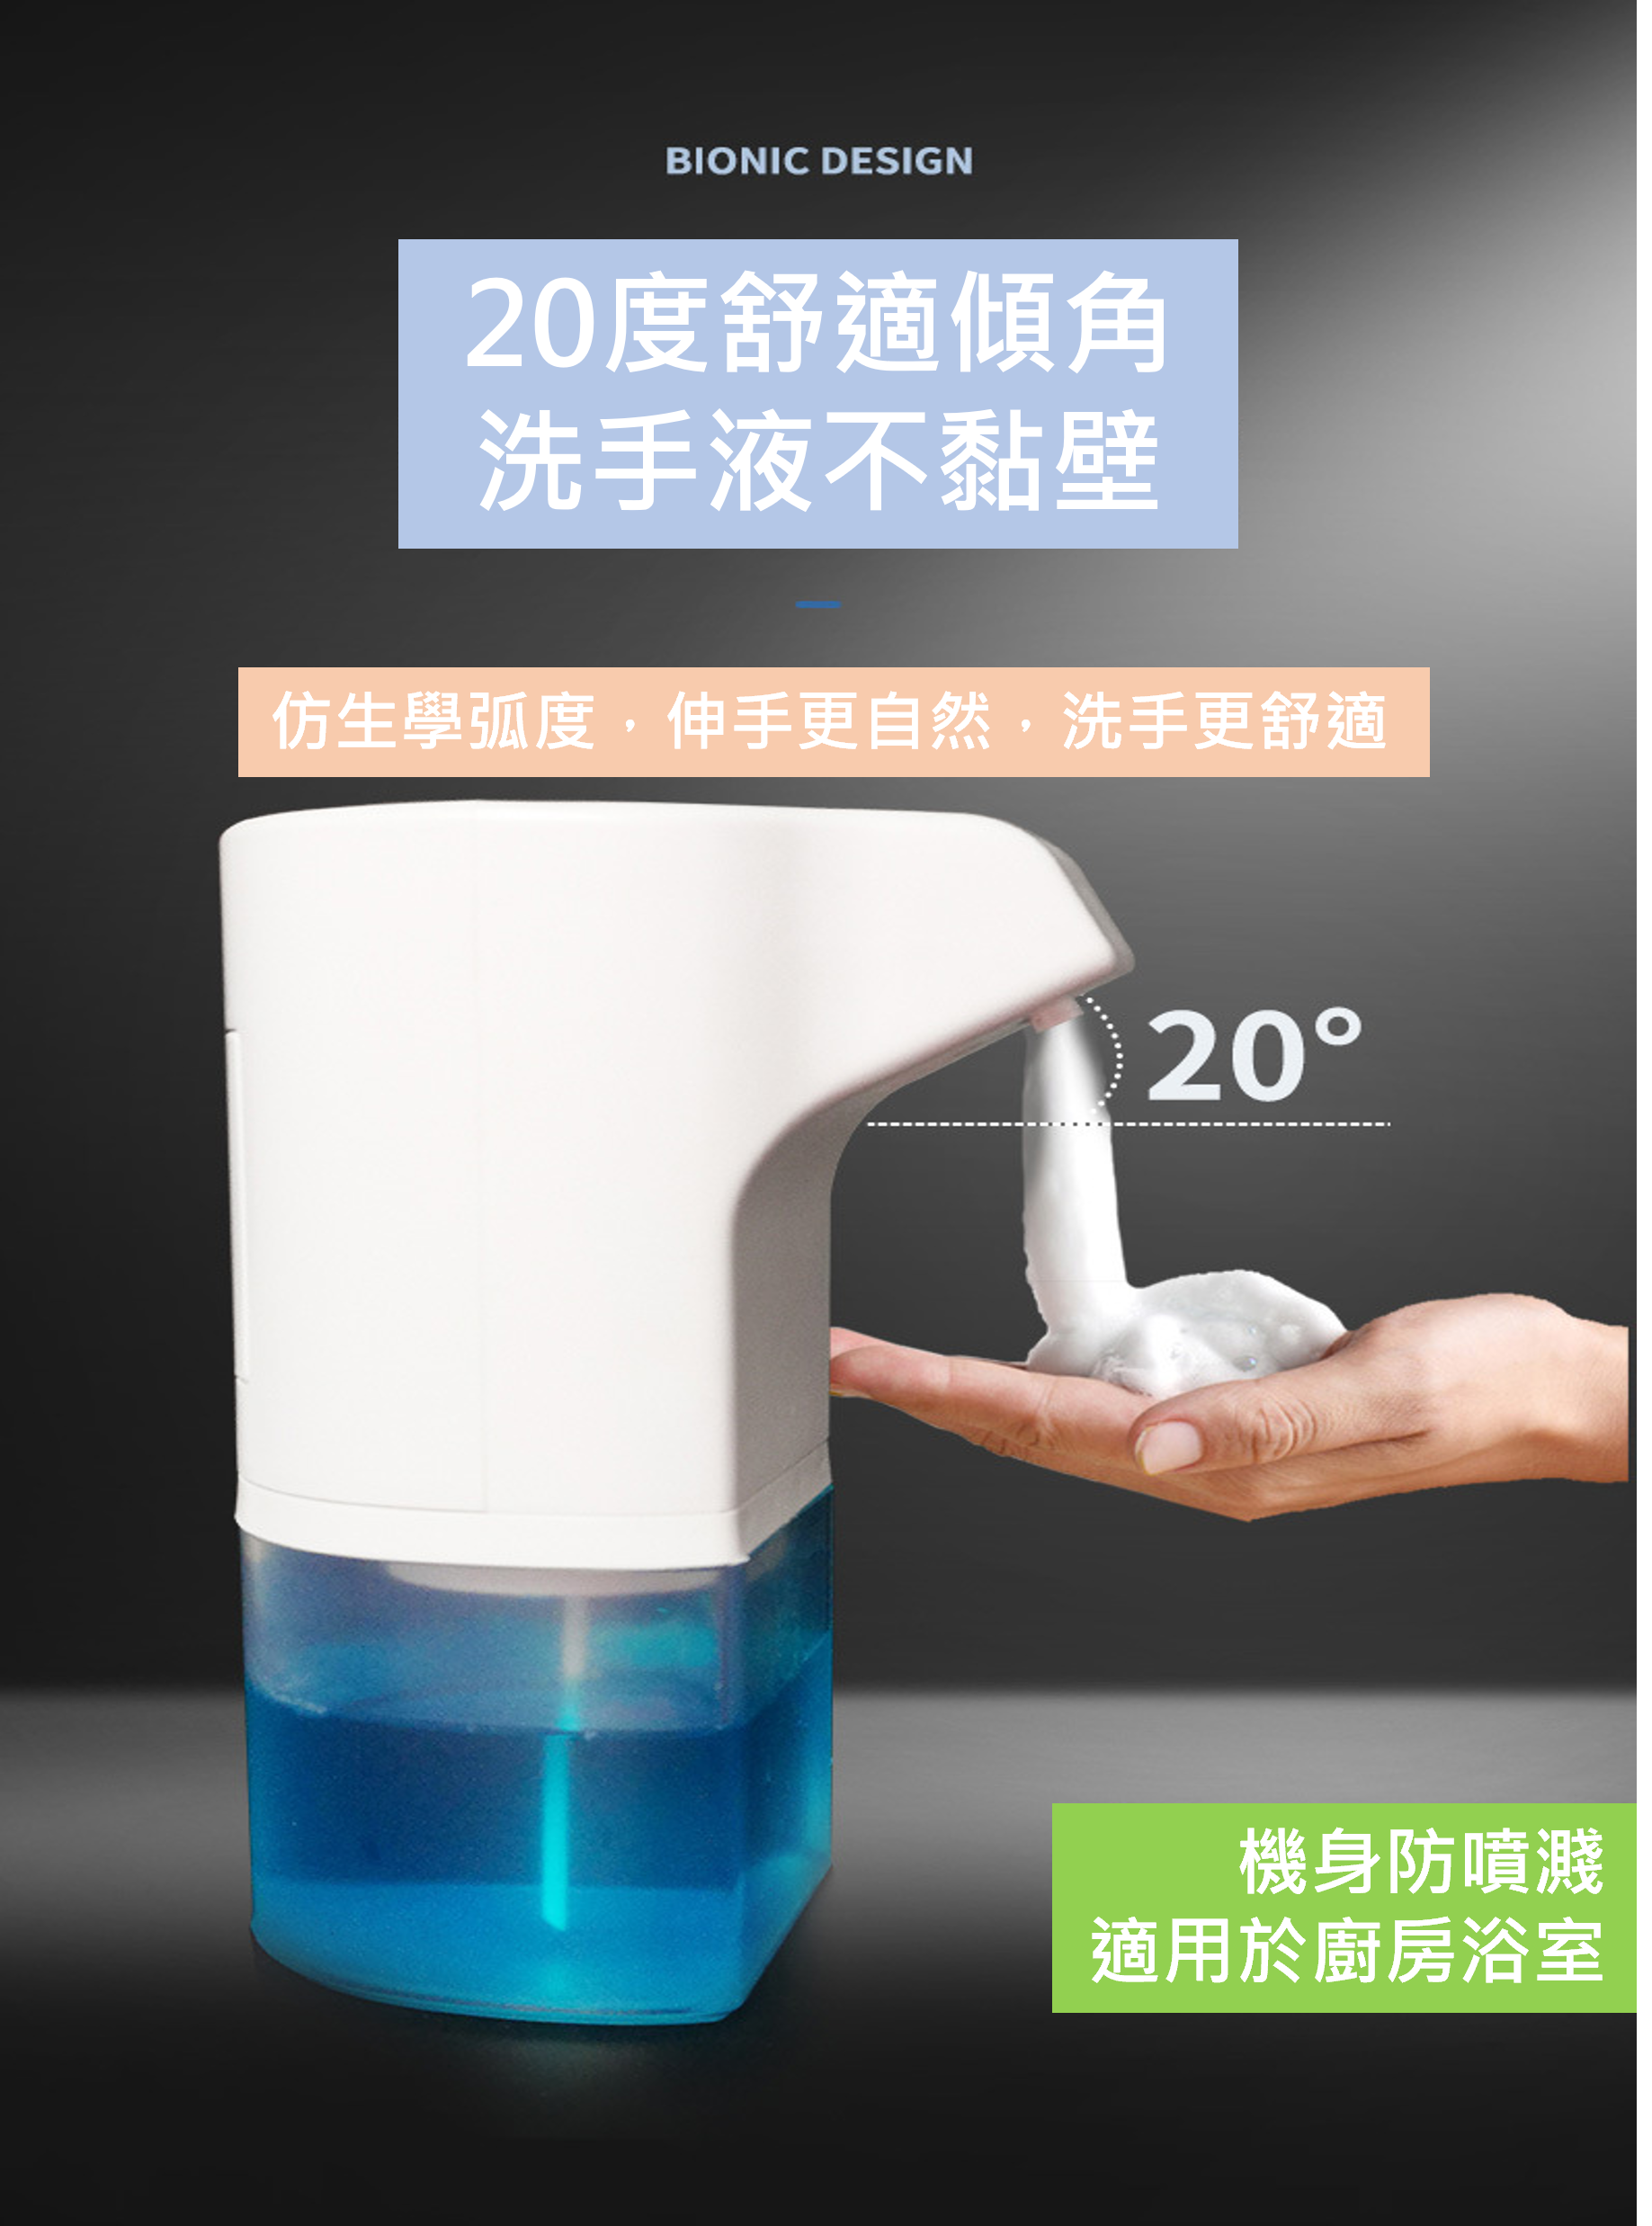 自動 洗手機 壁掛式 泡泡 感應 泡沫 洗手機 充電 電動 洗手液器 出泡機 感應 家用  居家